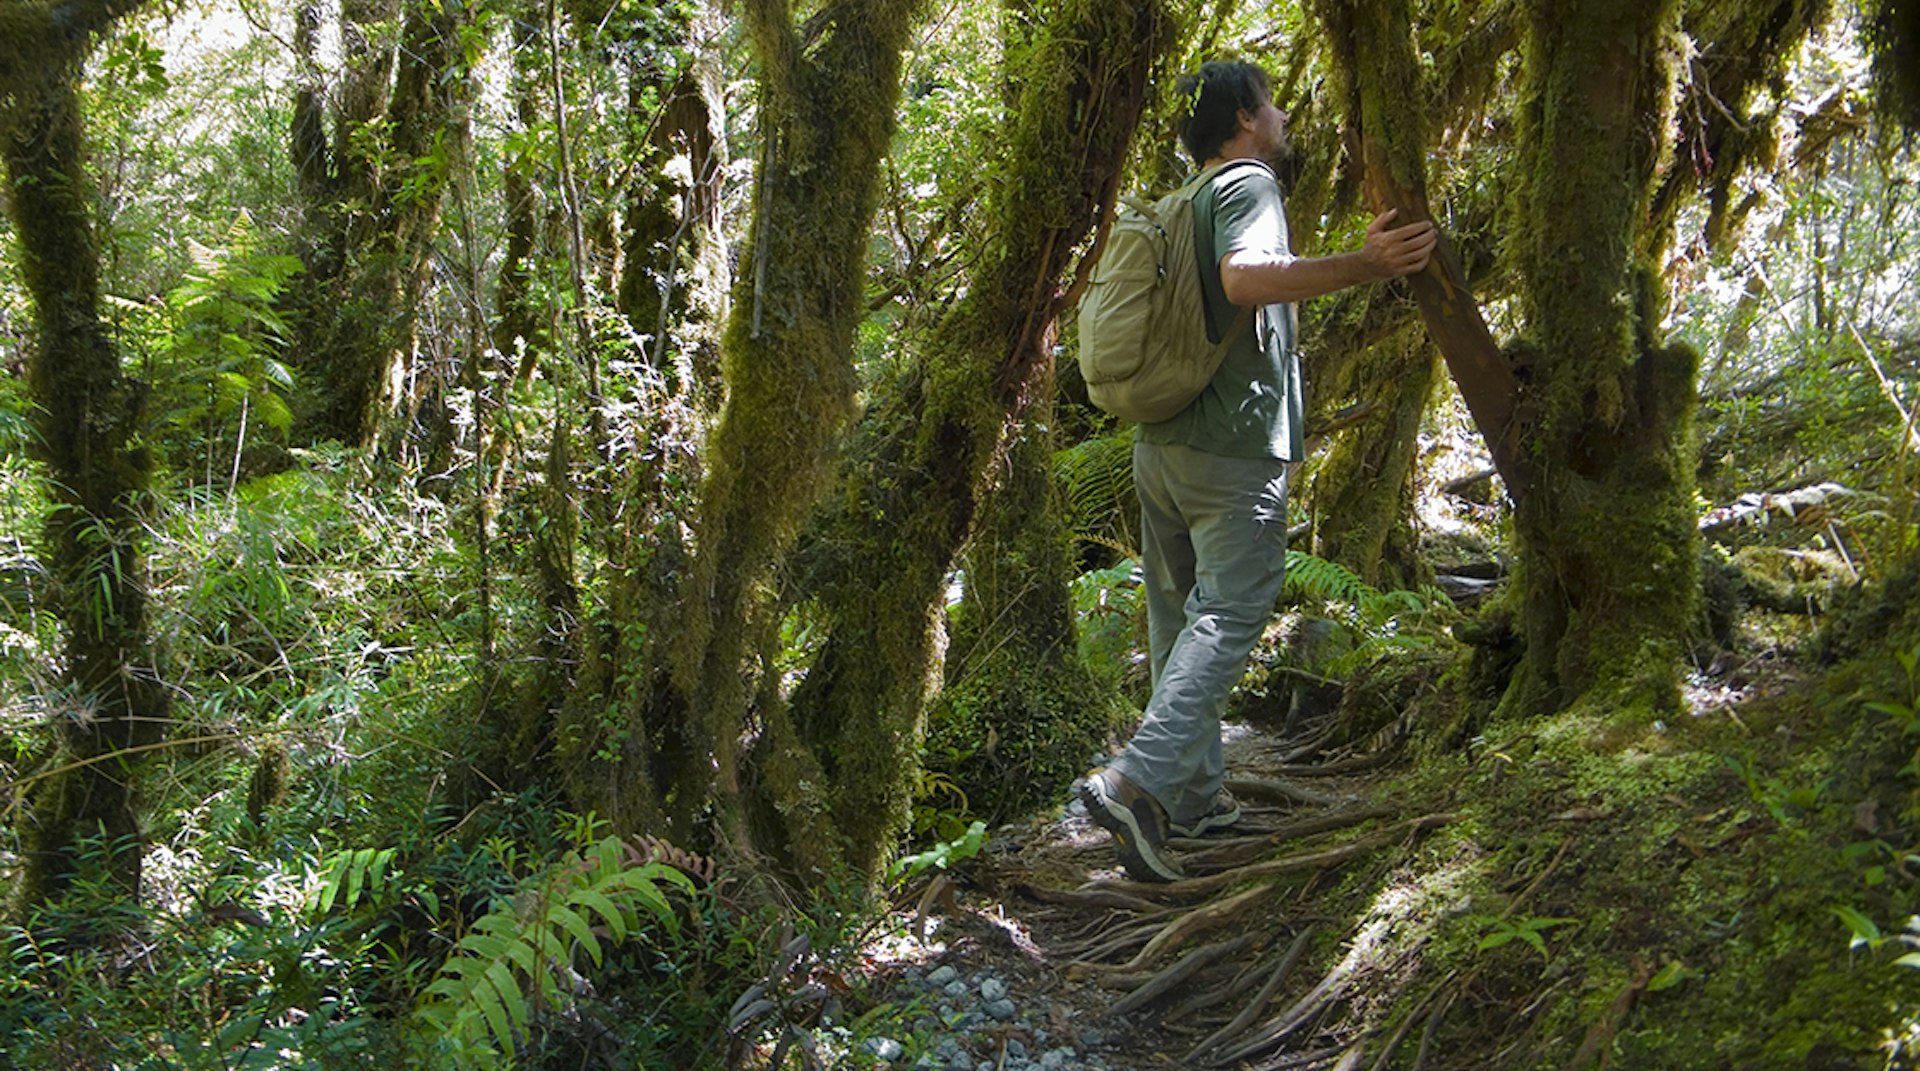 Explore trails through Valdivian rainforest in Parque Pumalín © Kathrin Ziegler / Getty Images